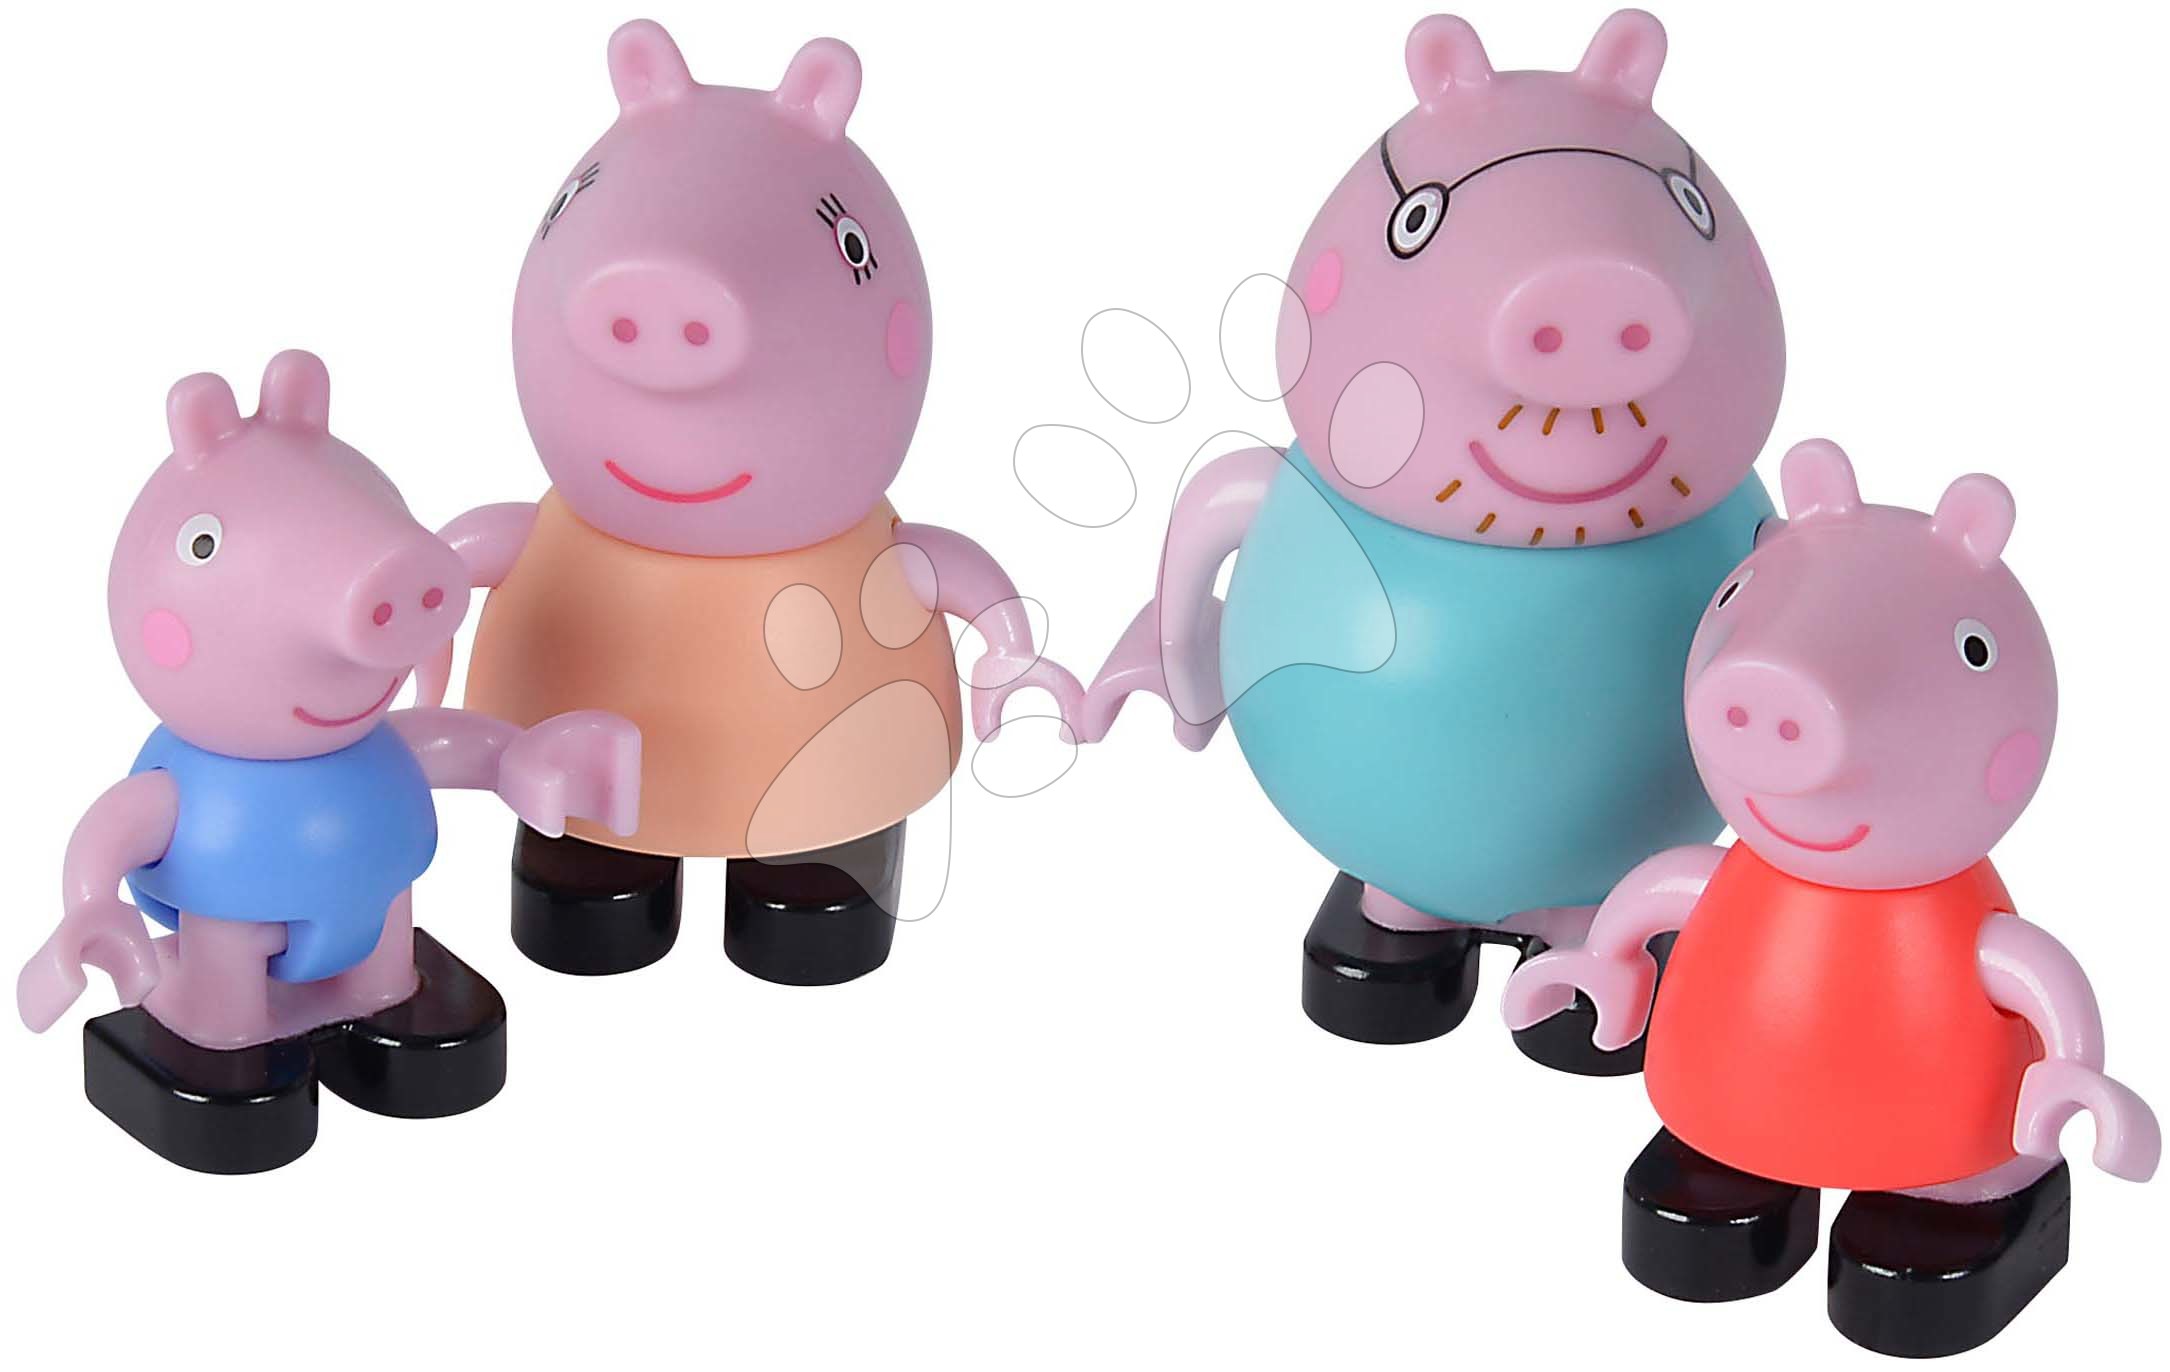 Stavebnica Peppa Pig Peppa’s Family PlayBig Bloxx Big rodinka so 4 postavičkami od 1,5-5 rokov